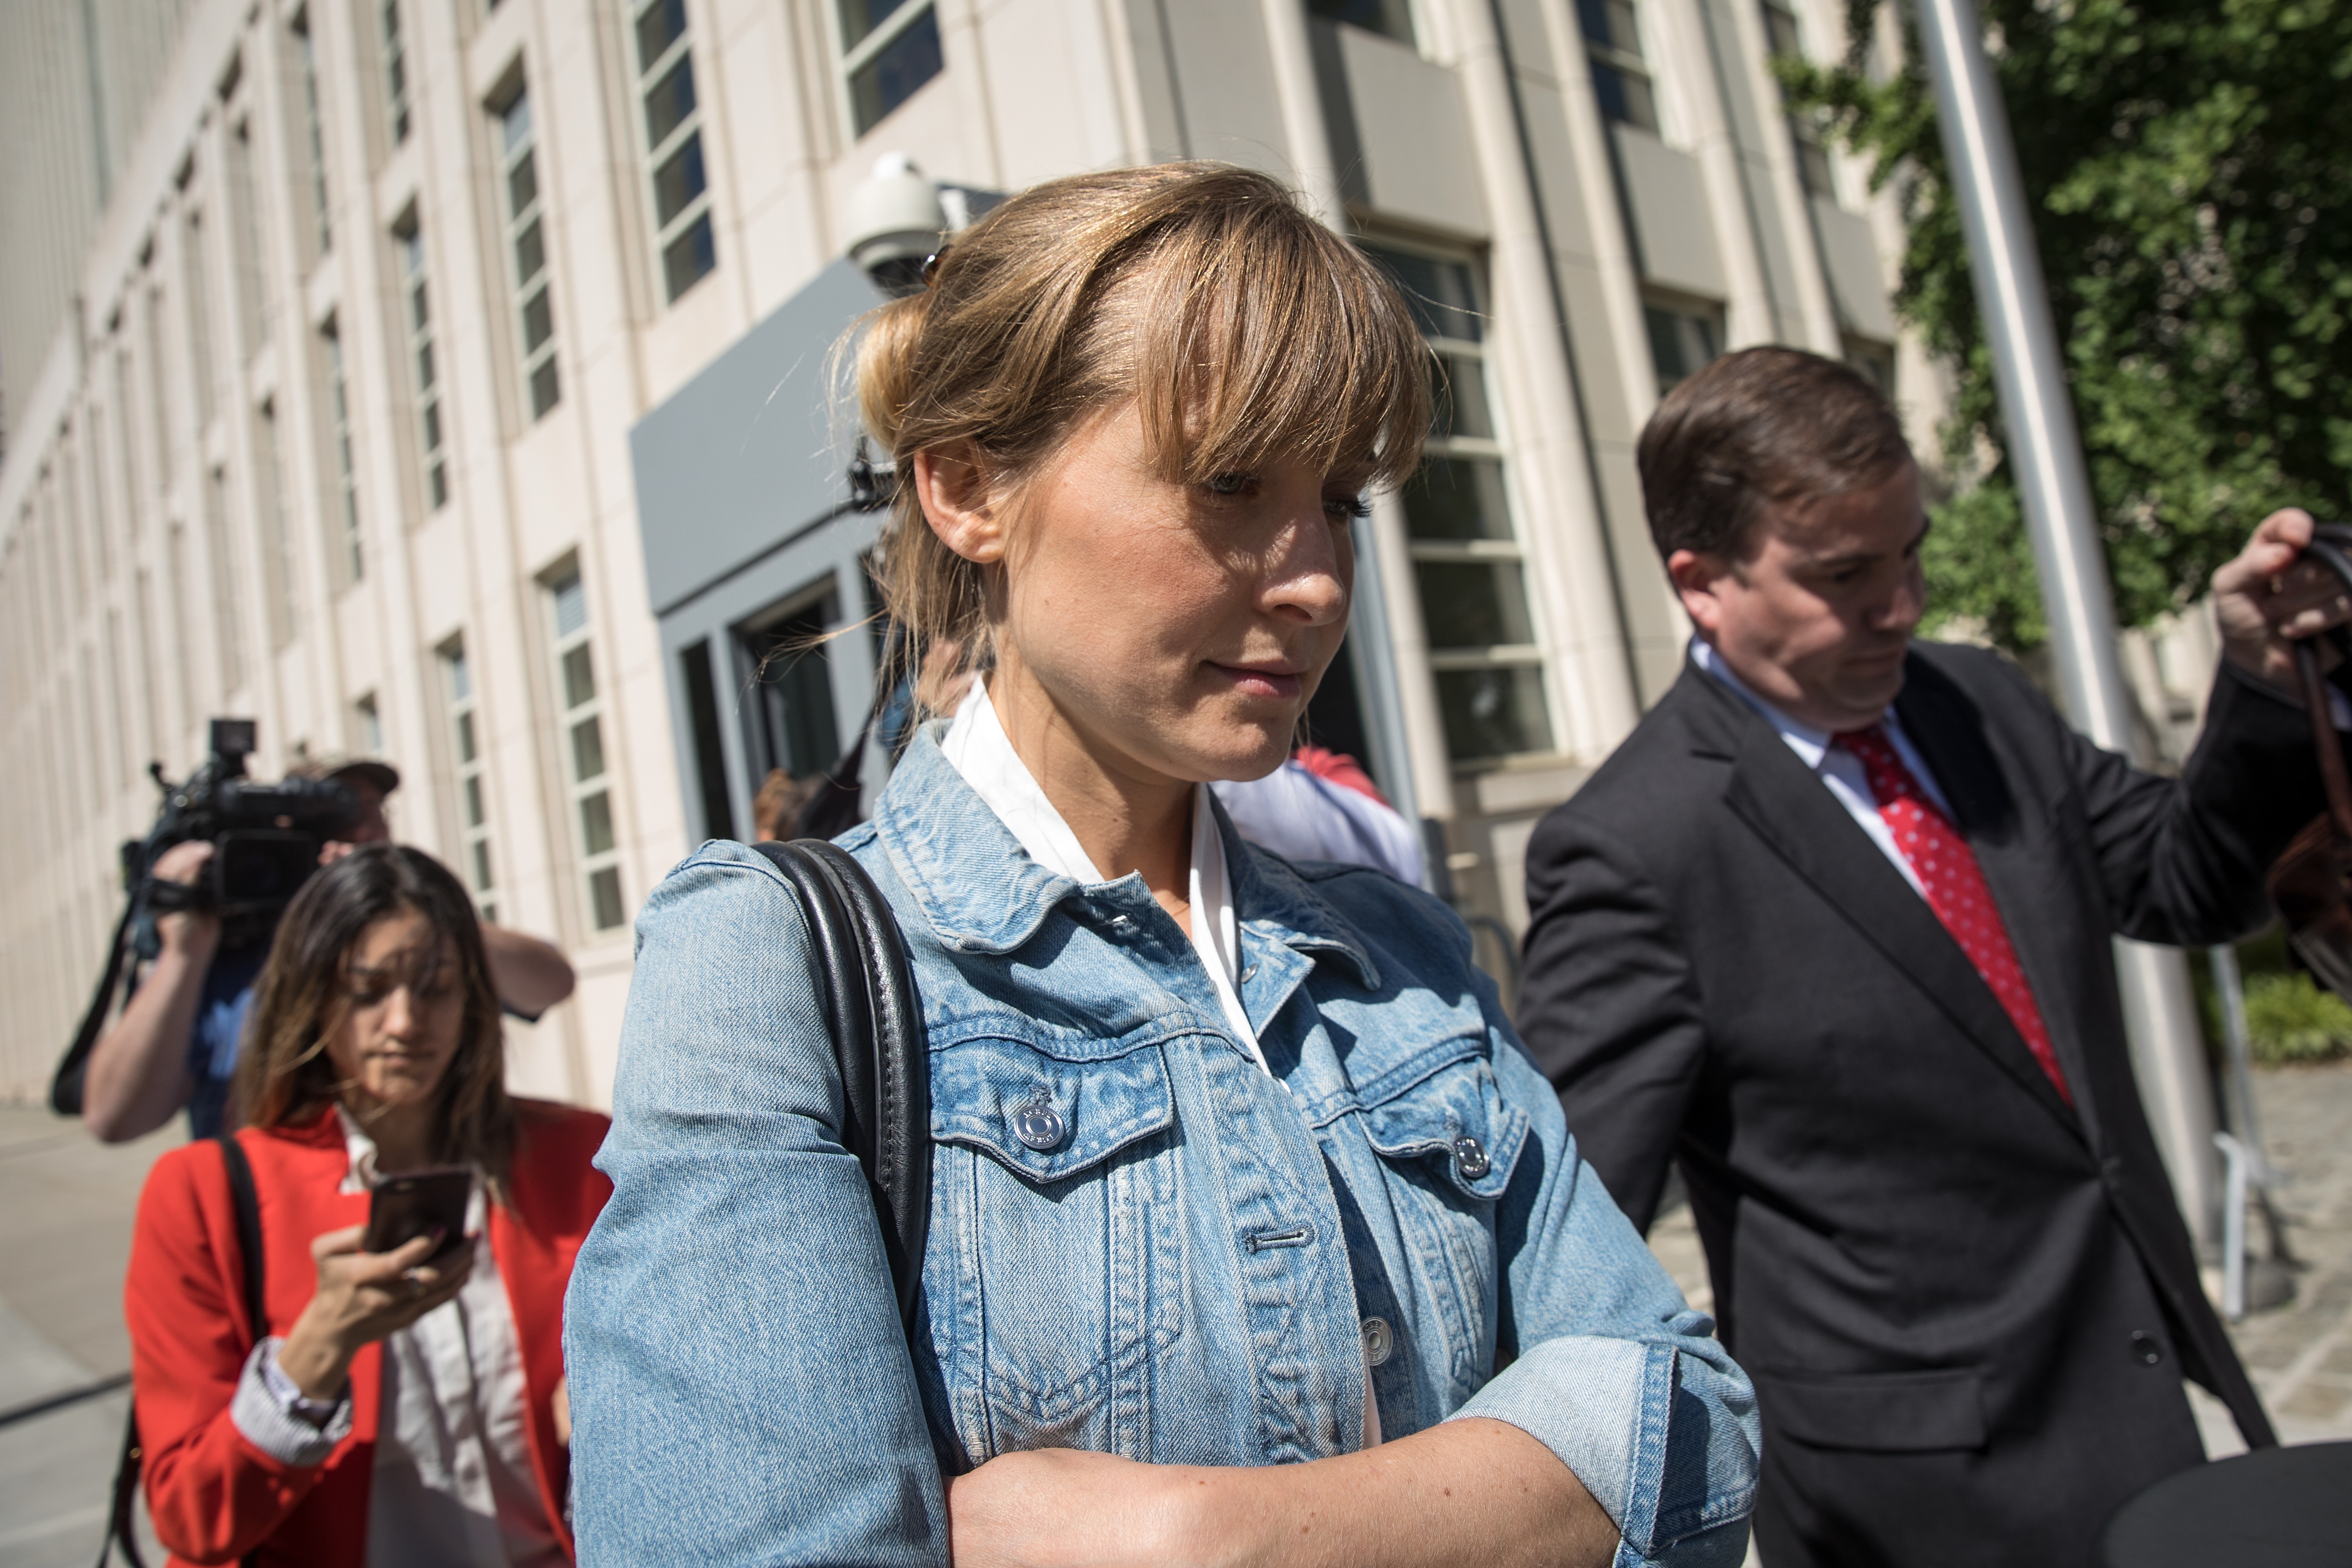 L'attrice Allison Mack si è unita ai suoi avvocati dopo l'ultima udienza in tribunale in cui è stata accusata di sfruttamento sessuale (Immagine: Getty Images)